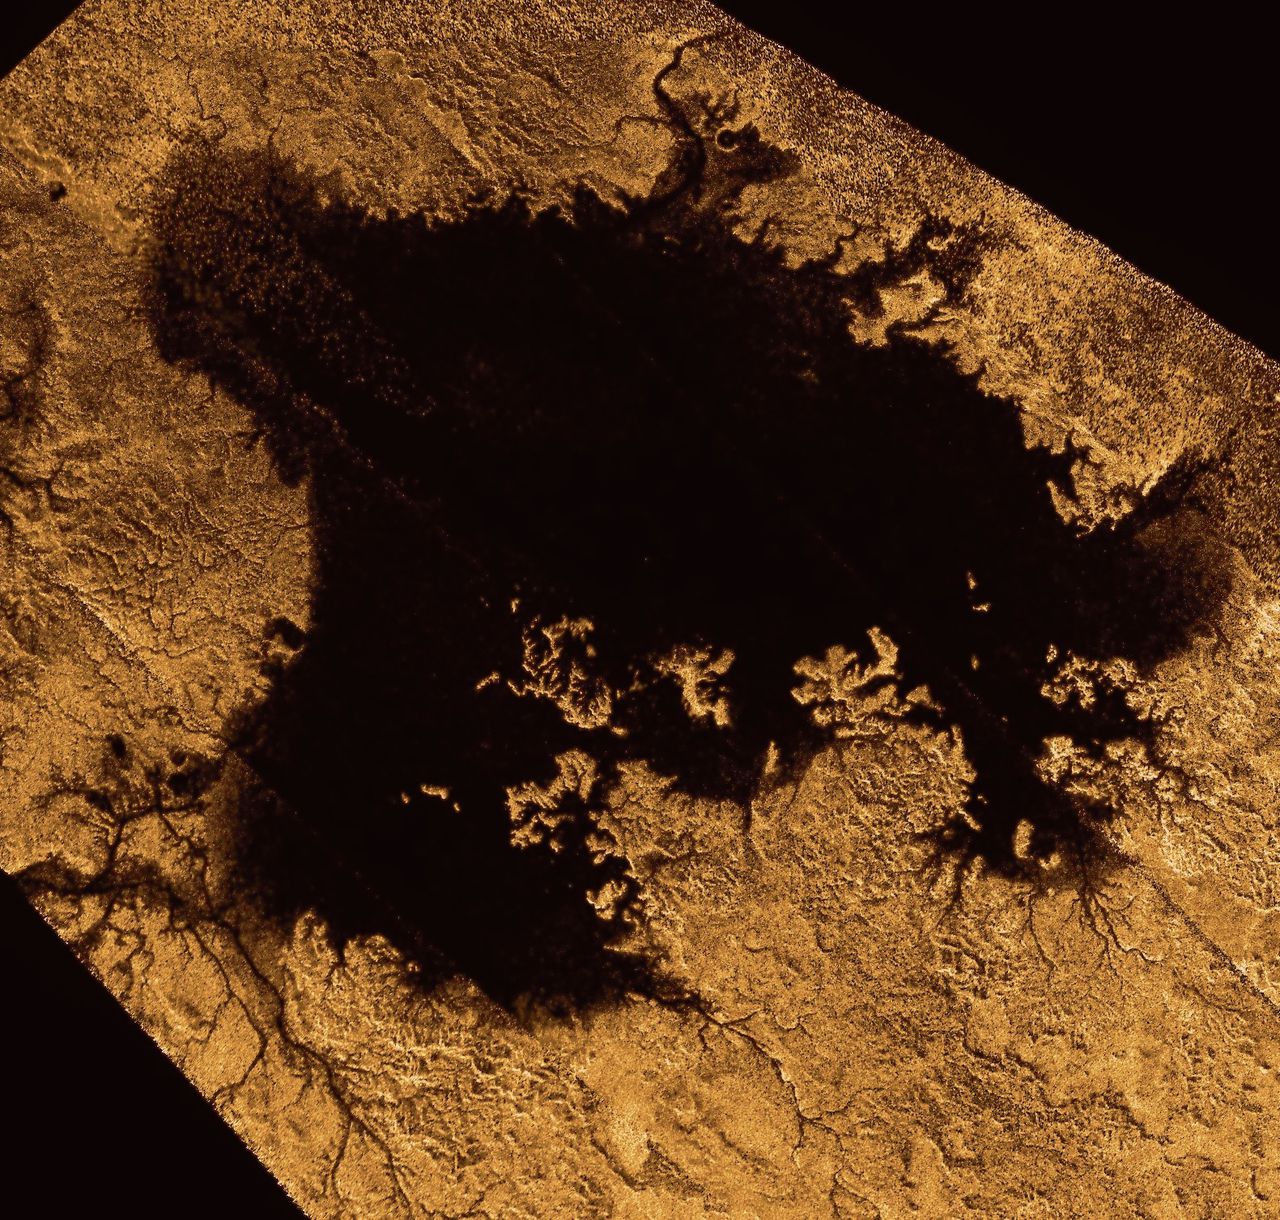 Zeeën op maan Titan zijn communicerende vaten